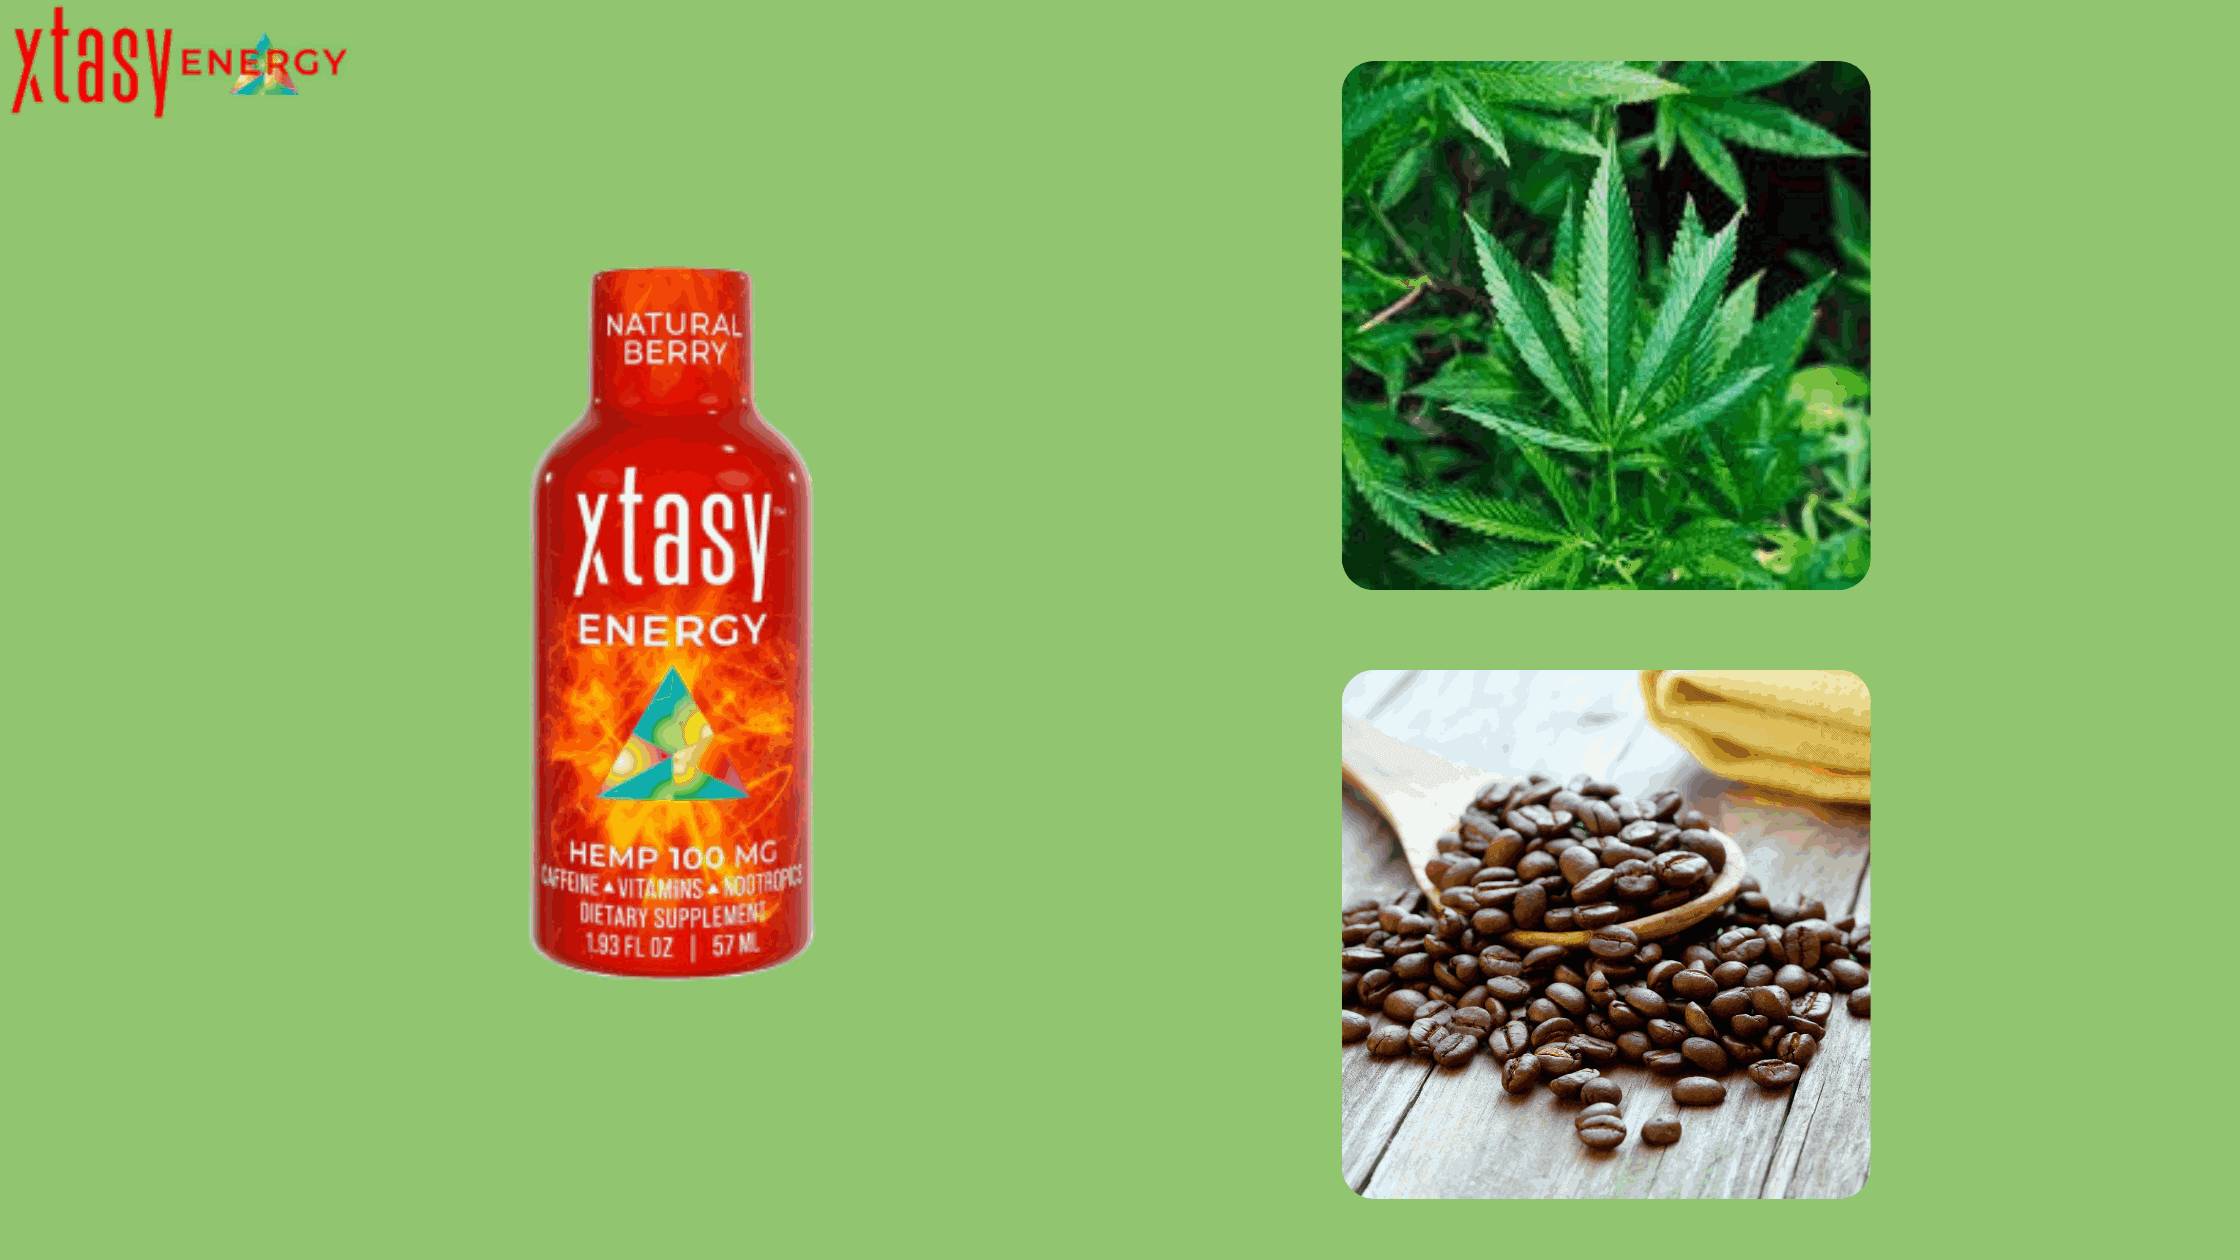  Xtasy Energy ingredients